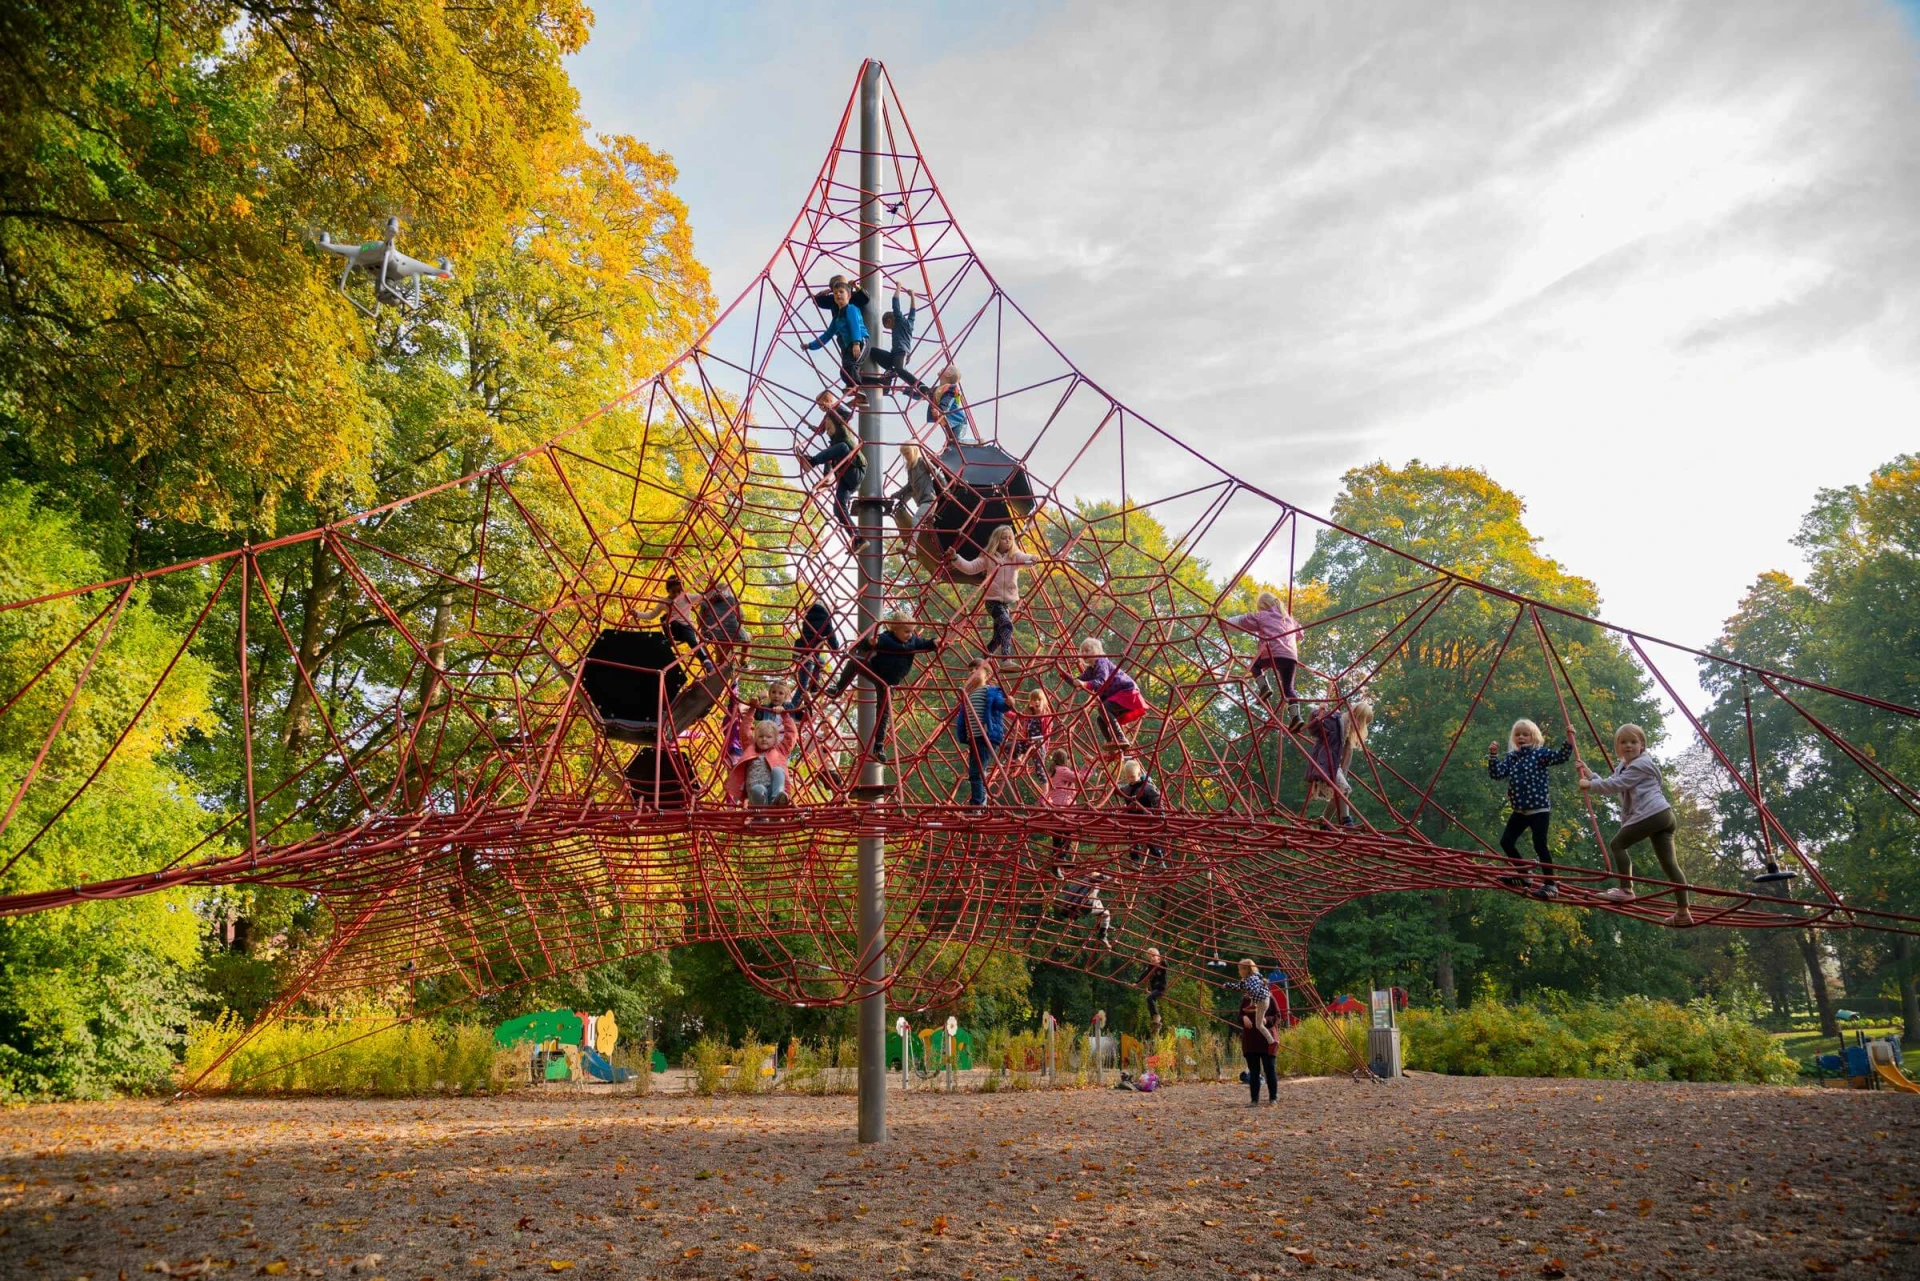 Kinder klettern auf dem großen Spielplatz Raumnetz im Schloss Egeskov